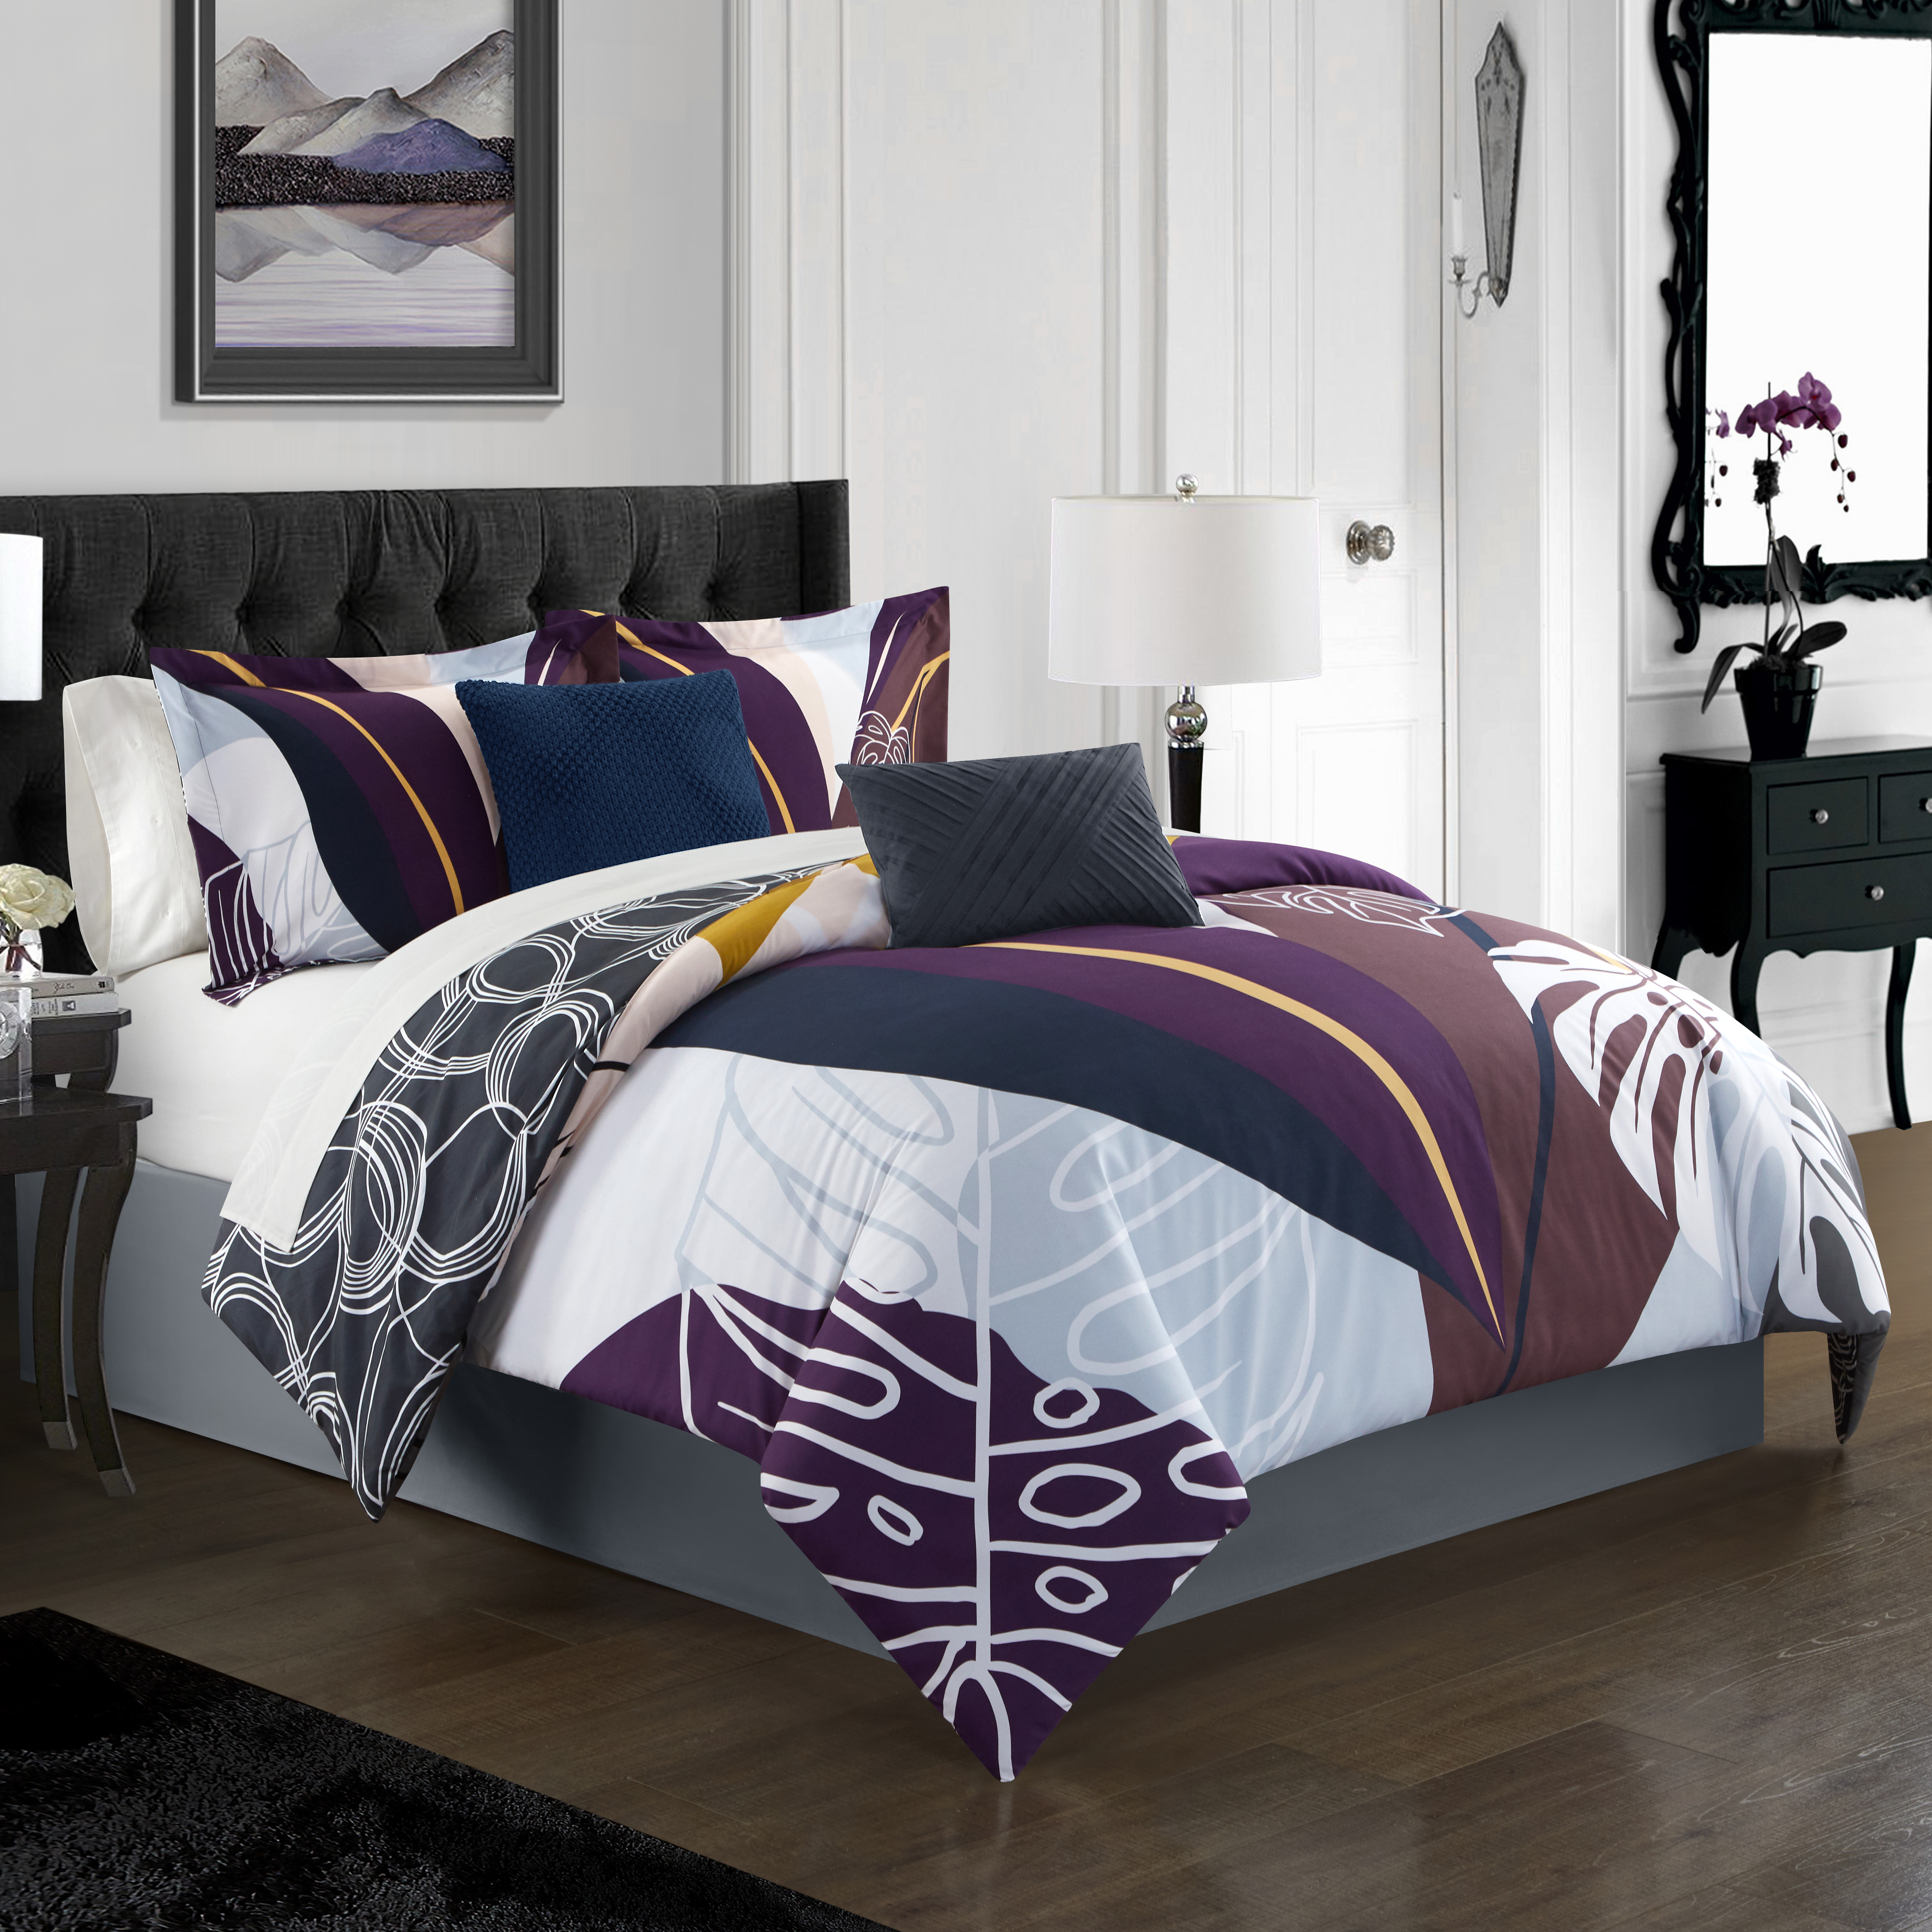 Emeraude 3 Piece Reversible Quilt Set Floral Print Cursive Script Design Bedding - Purple, Twin